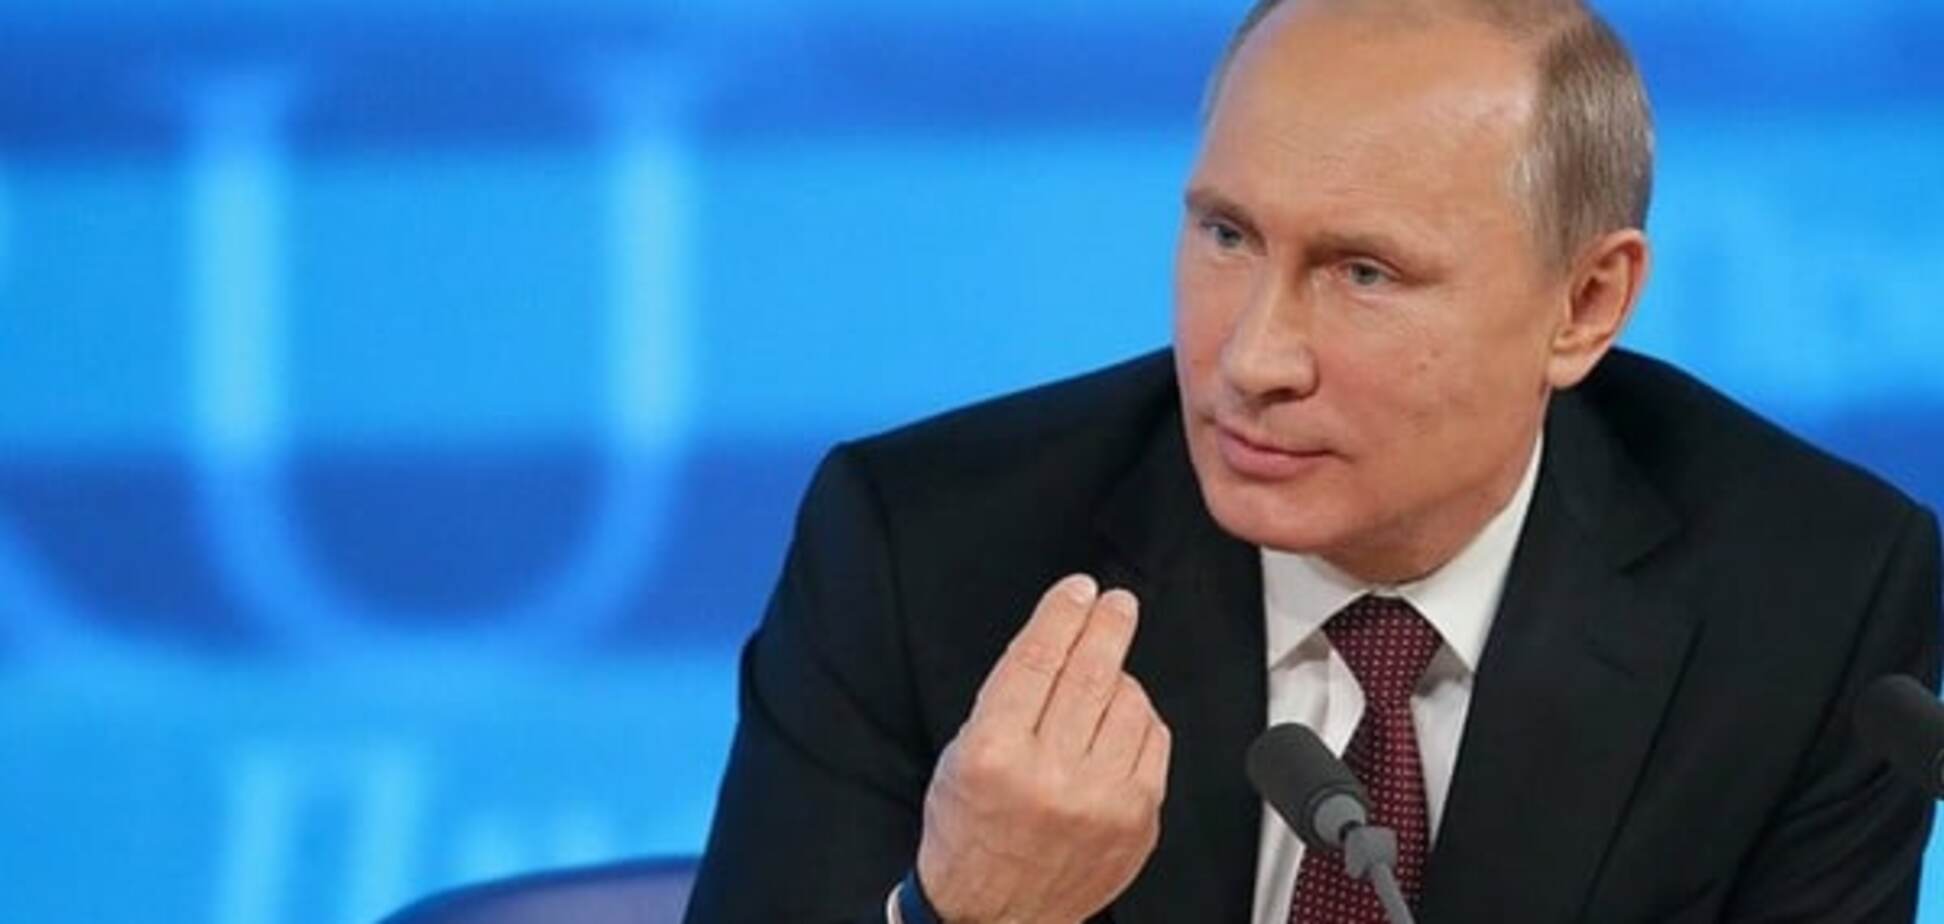 Владелец вилл и нефтяного бизнеса: всплыла информация о зяте Путина